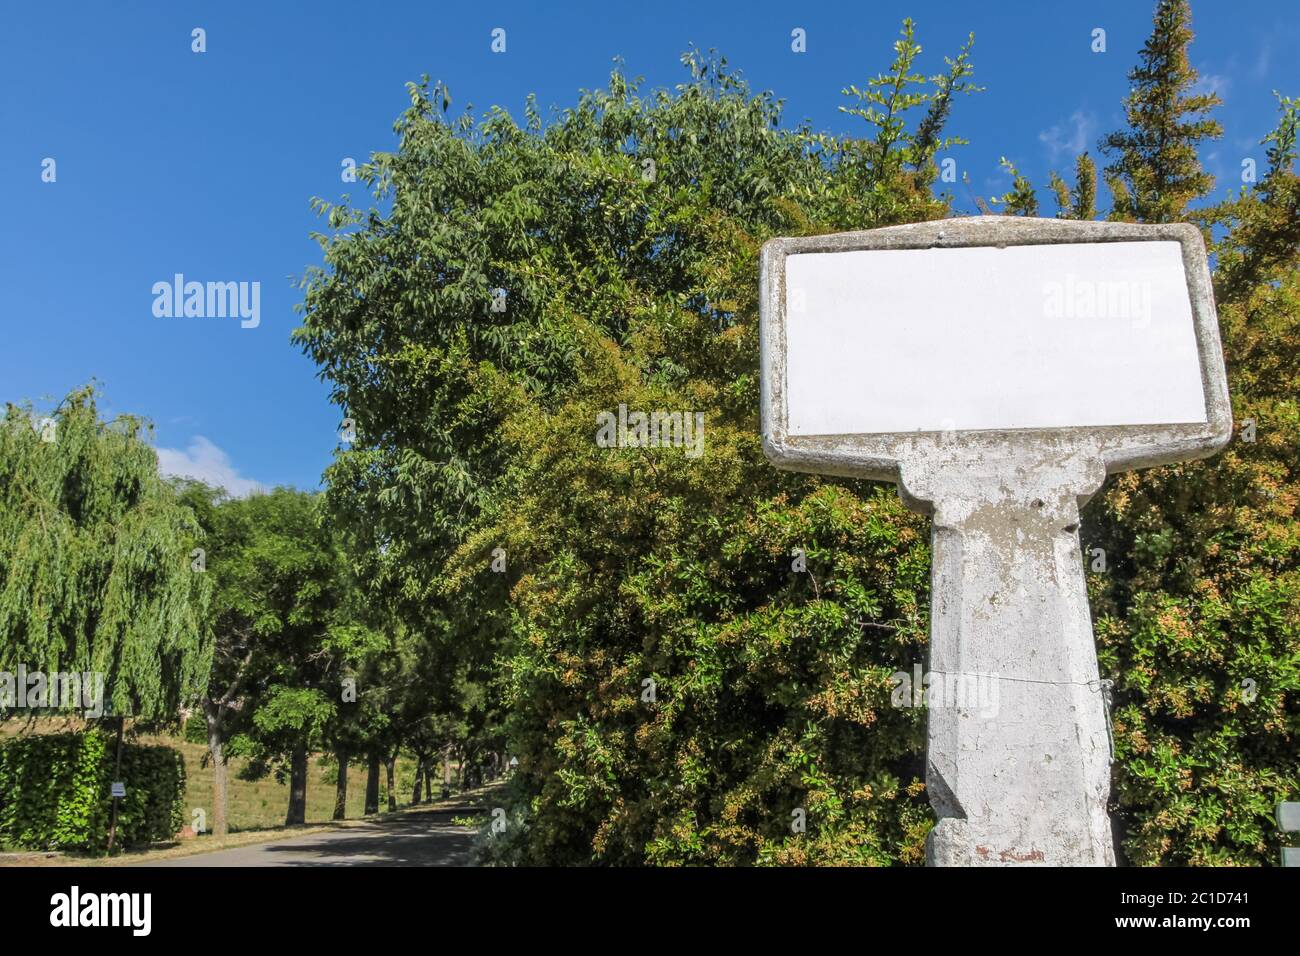 Letrero de pueblo francés vacío (espacio blanco) hecho de hormigón en la entrada del pueblo Foto de stock